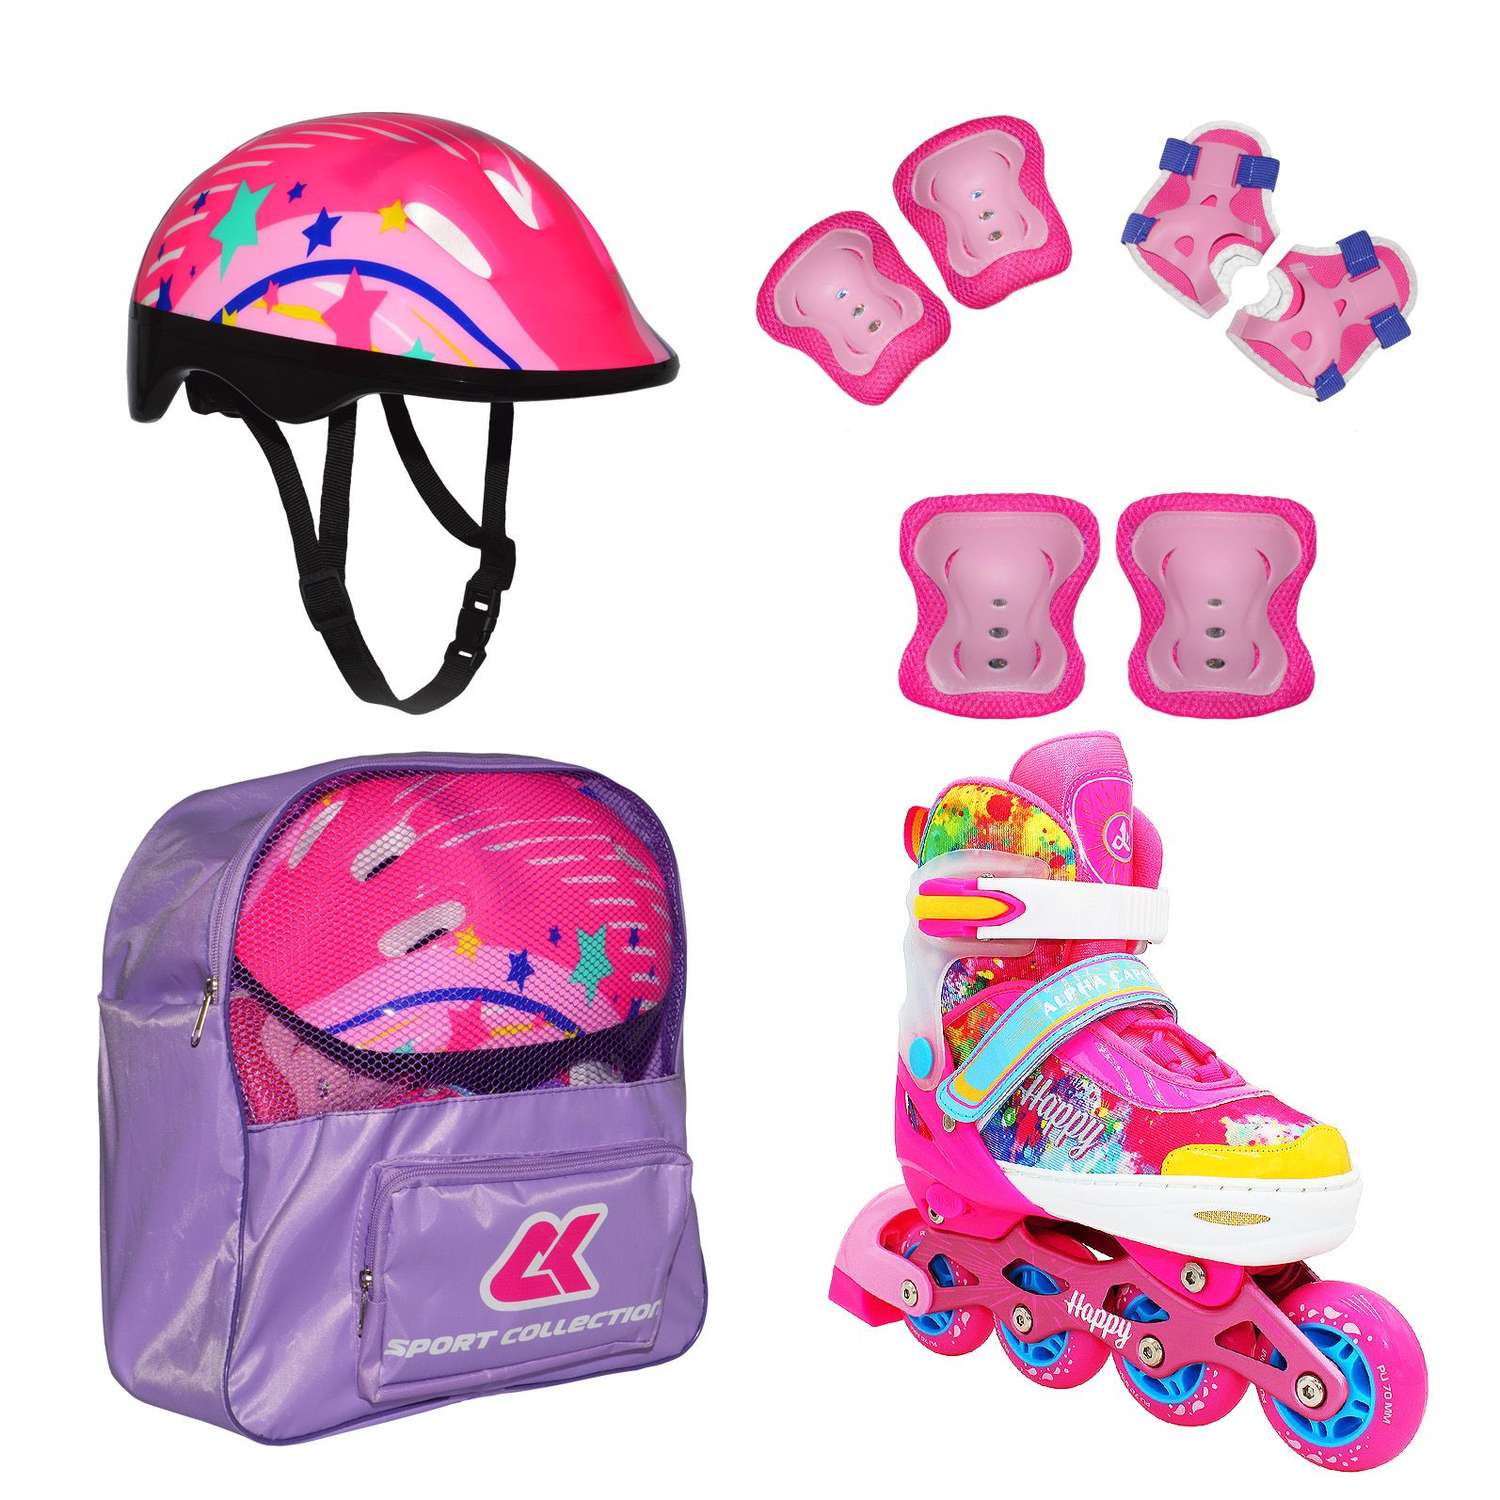 Набор роликовые коньки Sport Collection раздвижные Set Happy Pink шлем и набор защиты в сумке размер M 33-36 - фото 1